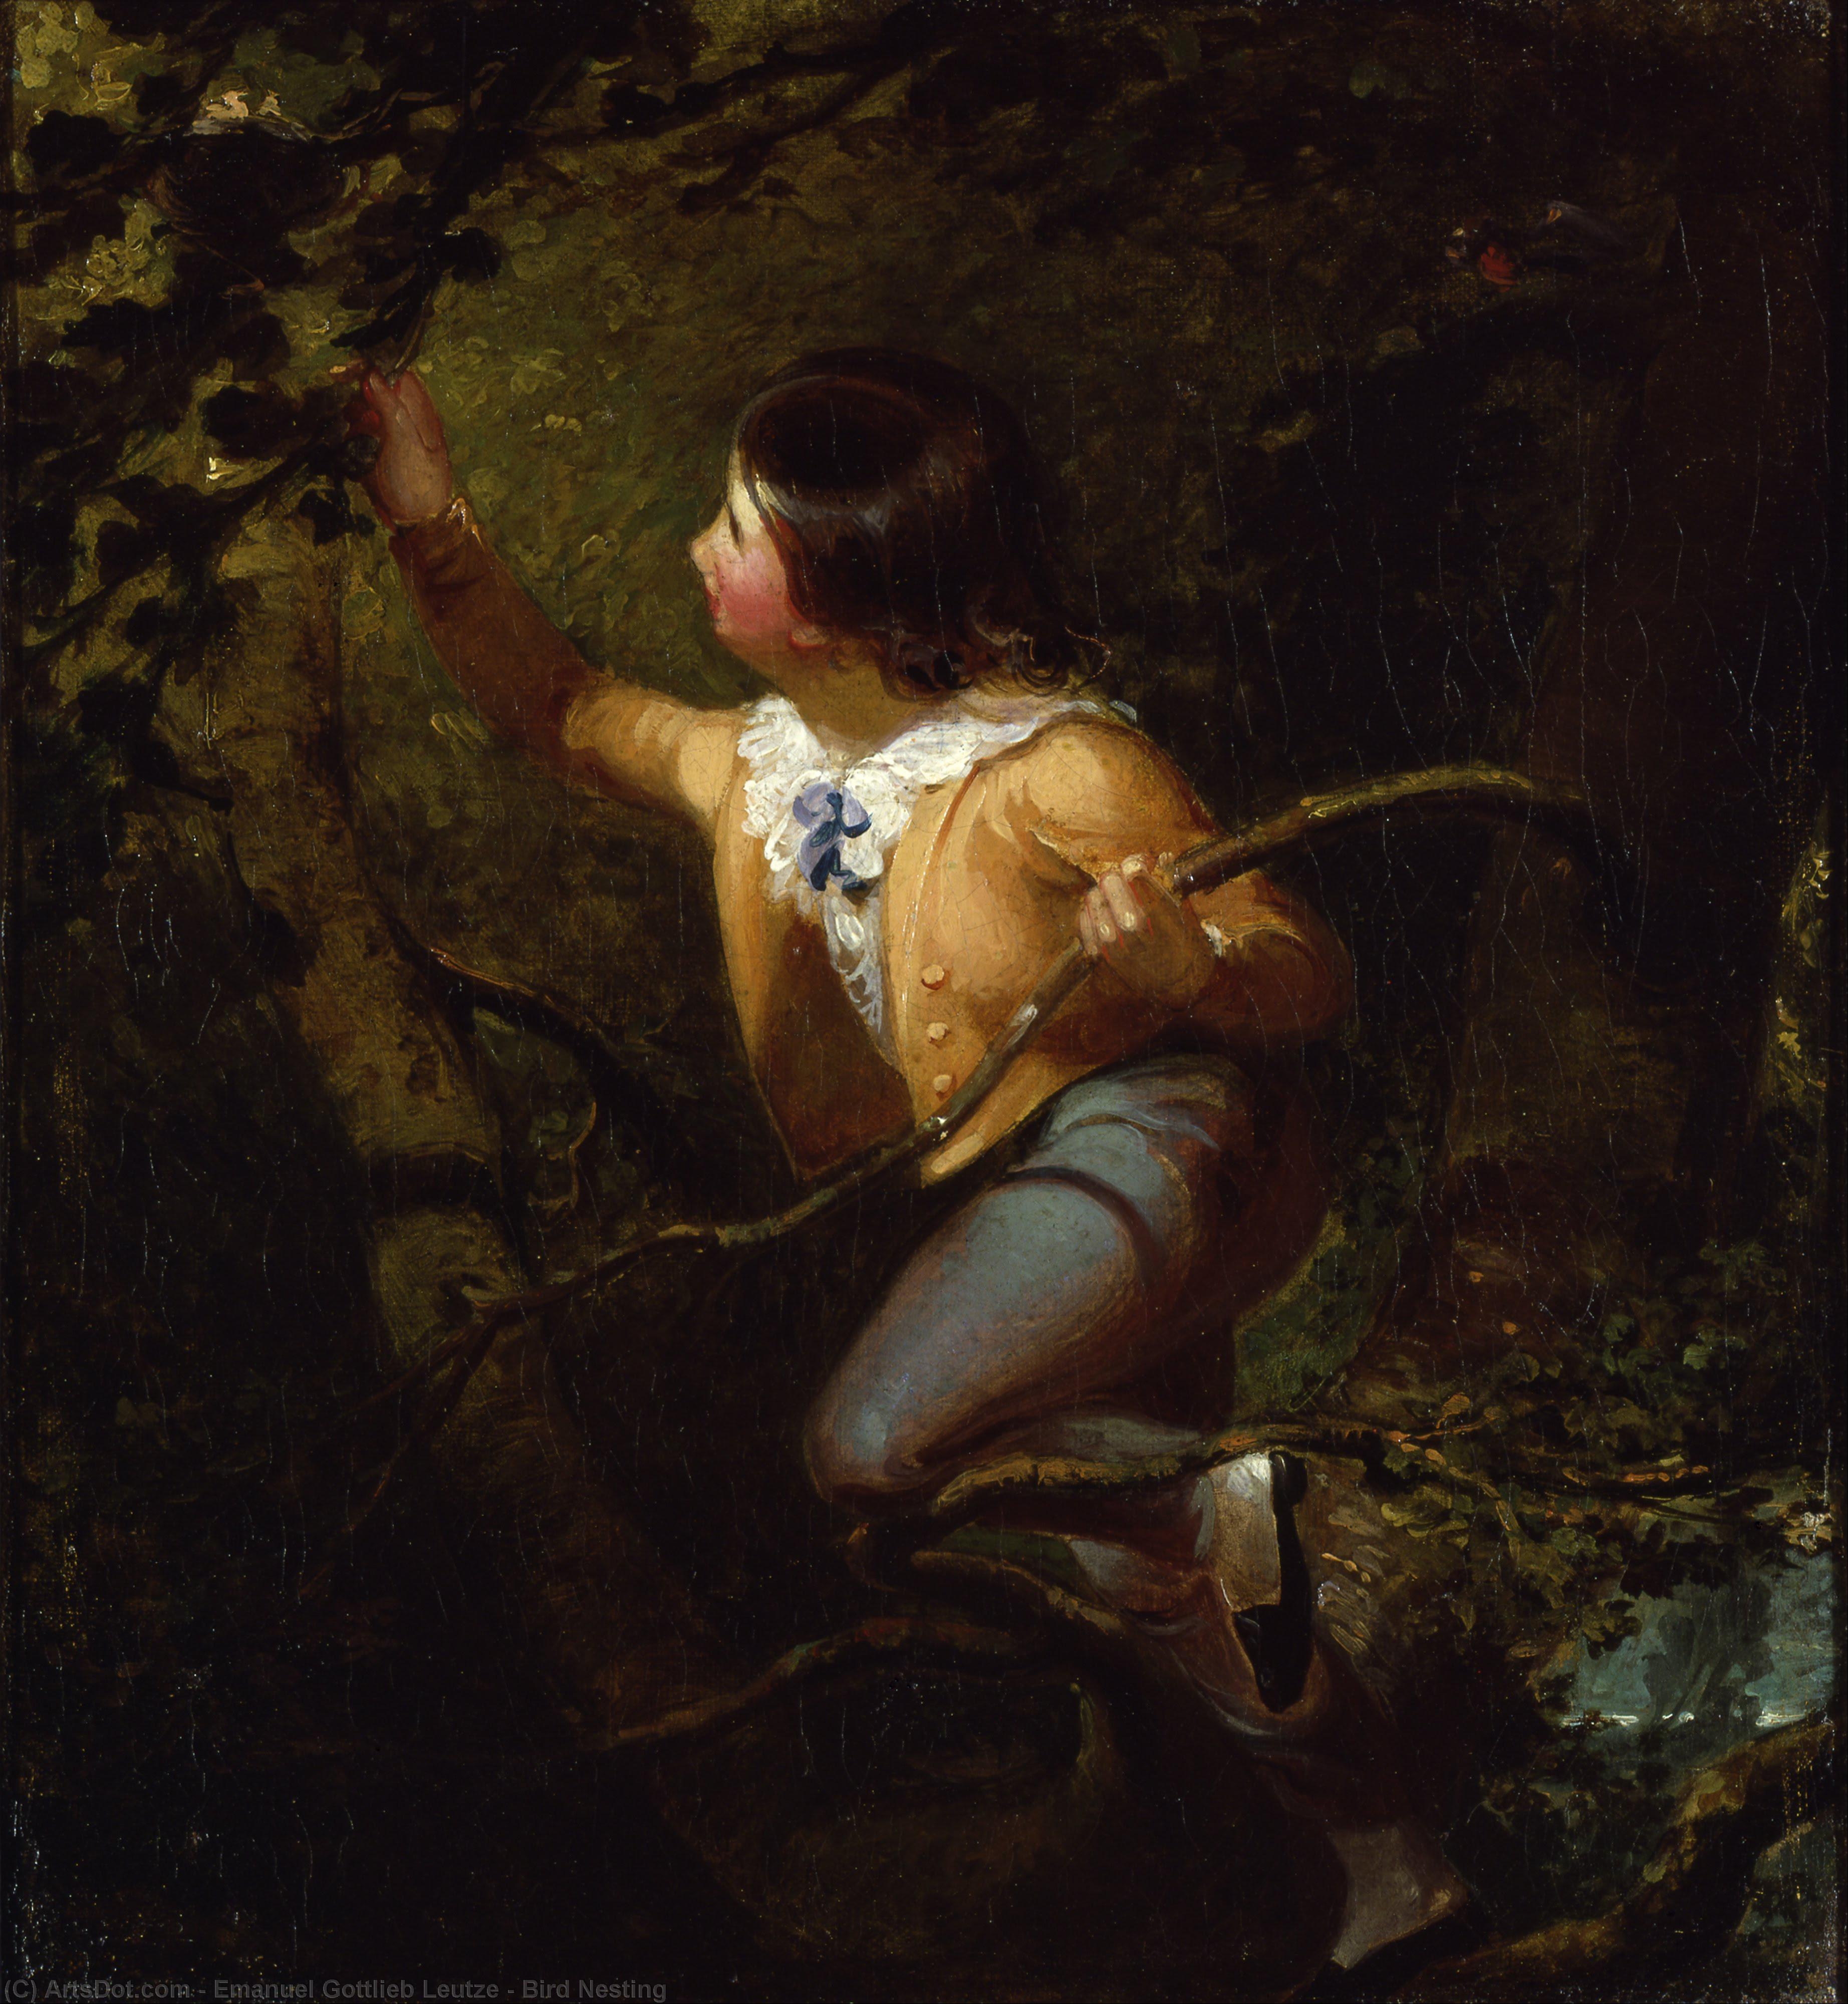 Получить Репродукции Картин Берд Нестинг, 1837 по Emanuel Gottlieb Leutze (1816-1868, Germany) | ArtsDot.com